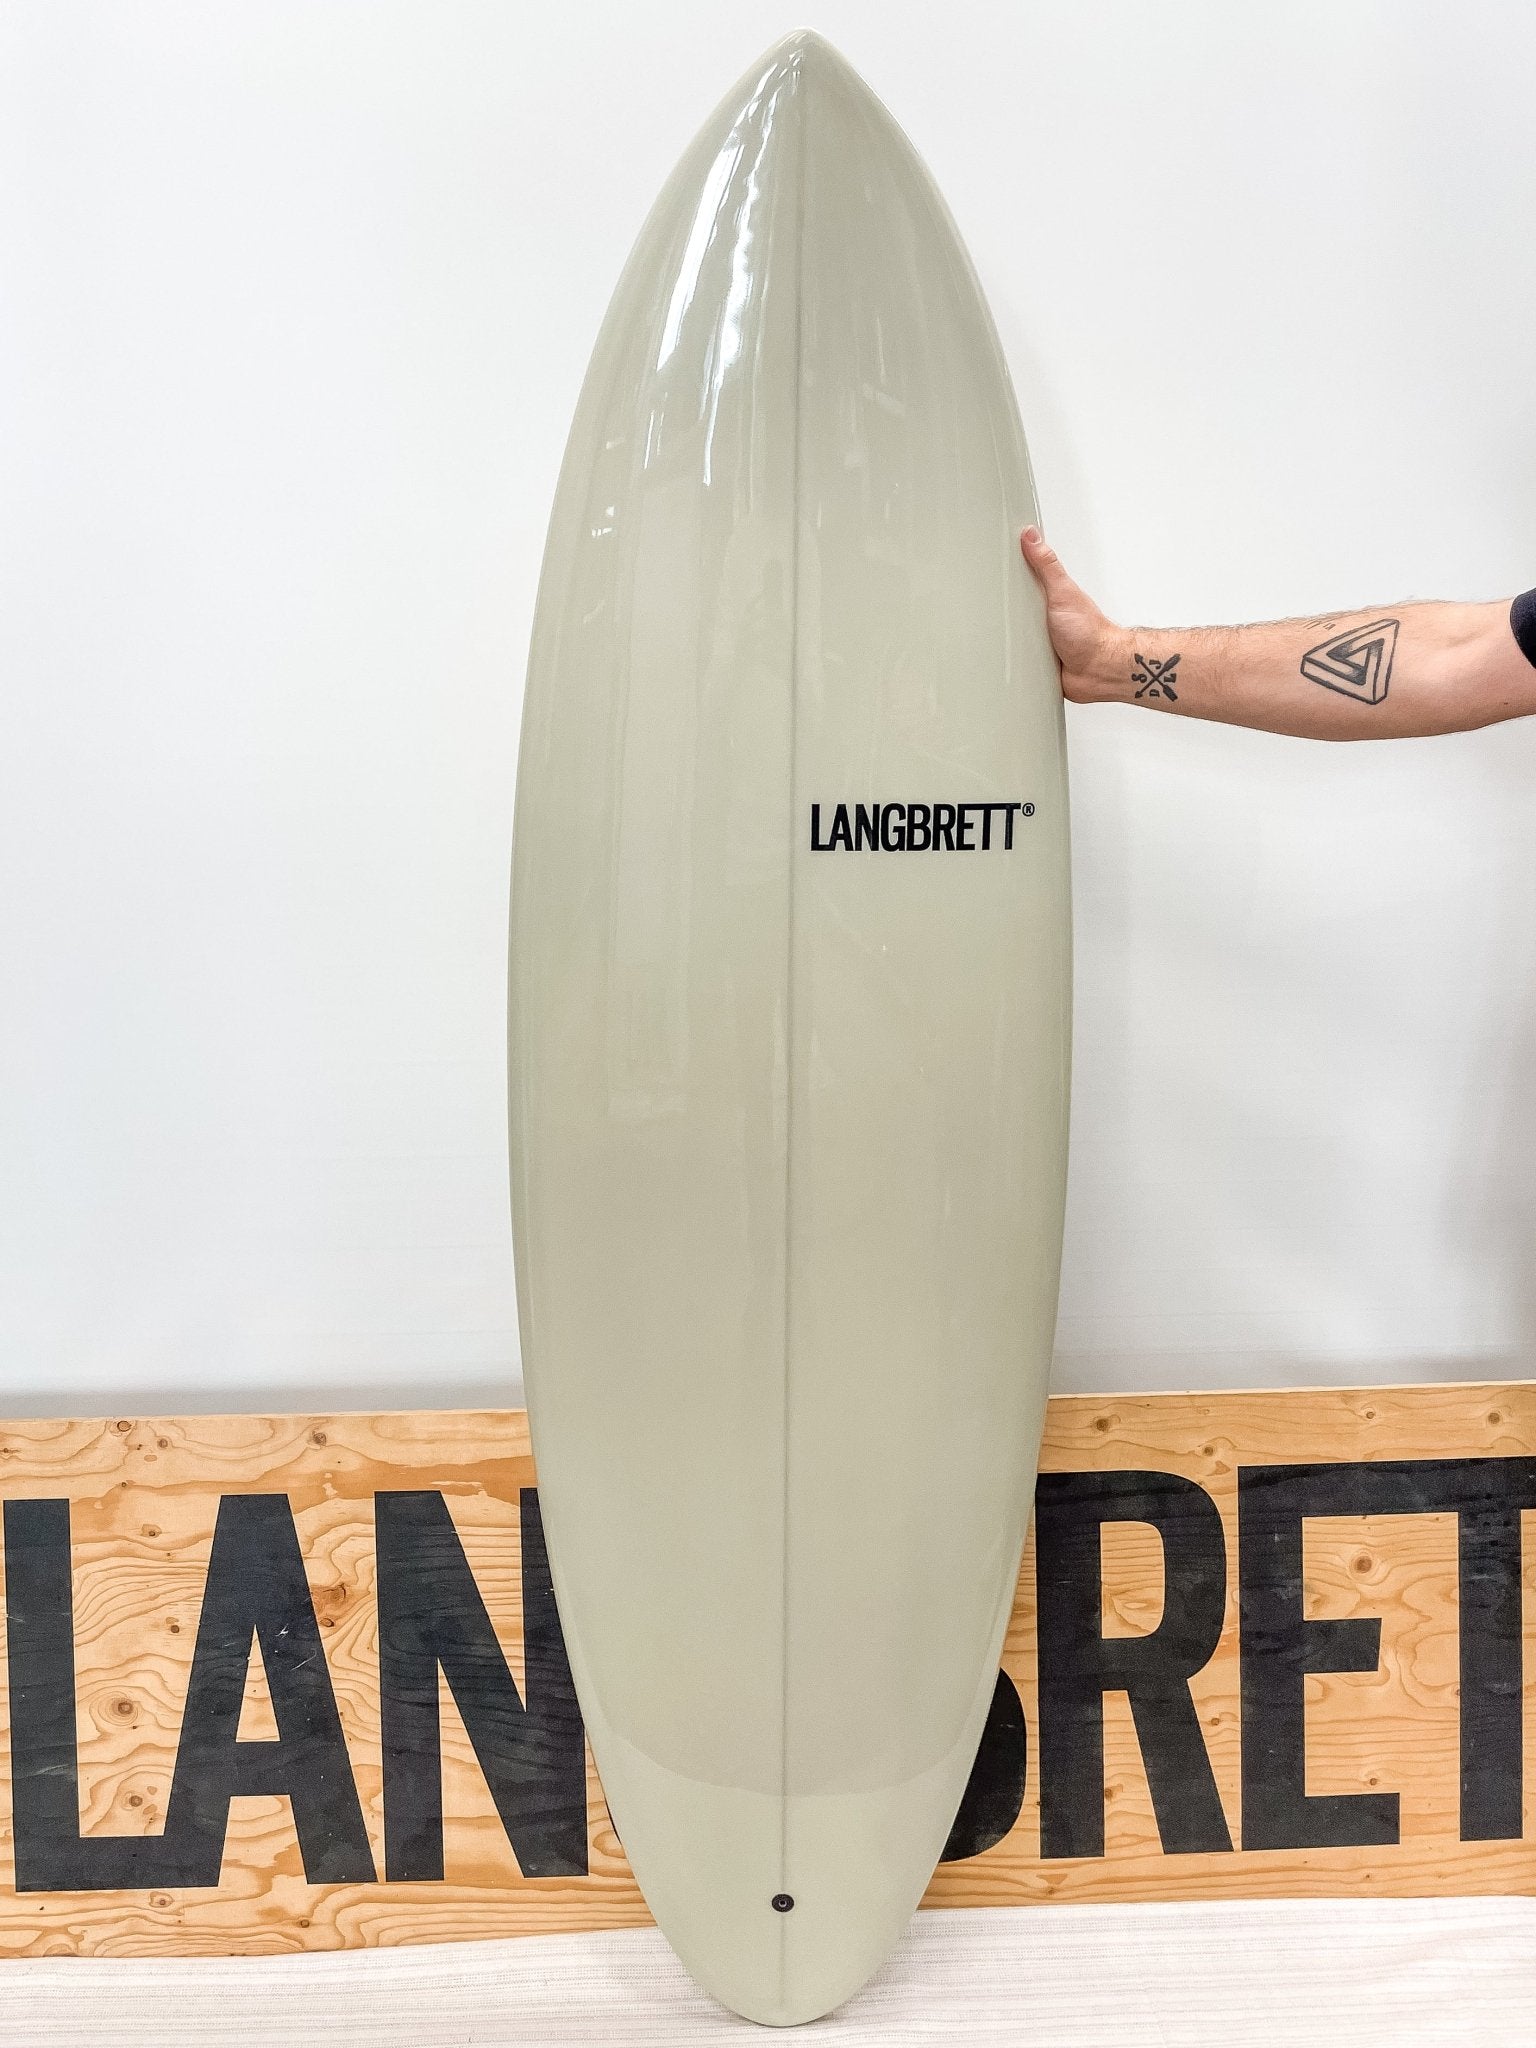 shortboard 6'3" - LANGBRETT